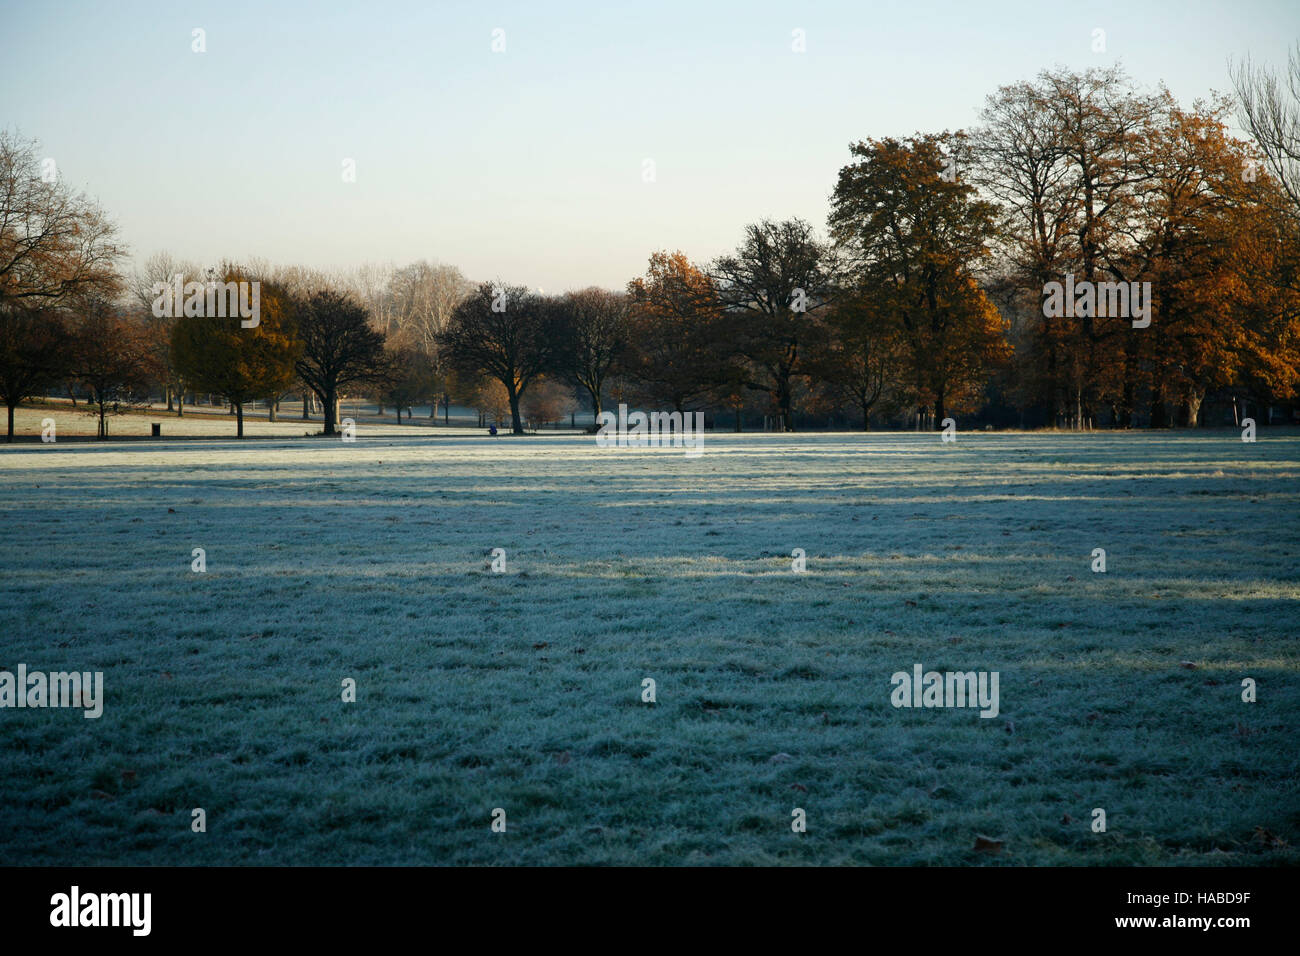 Londres, Royaume-Uni. 29 Nov, 2016. Brockwell Park, dans le sud de Londres, 8h30 le matin, température de congélation : Crédit fotographic.eu/Alamy Live News Banque D'Images